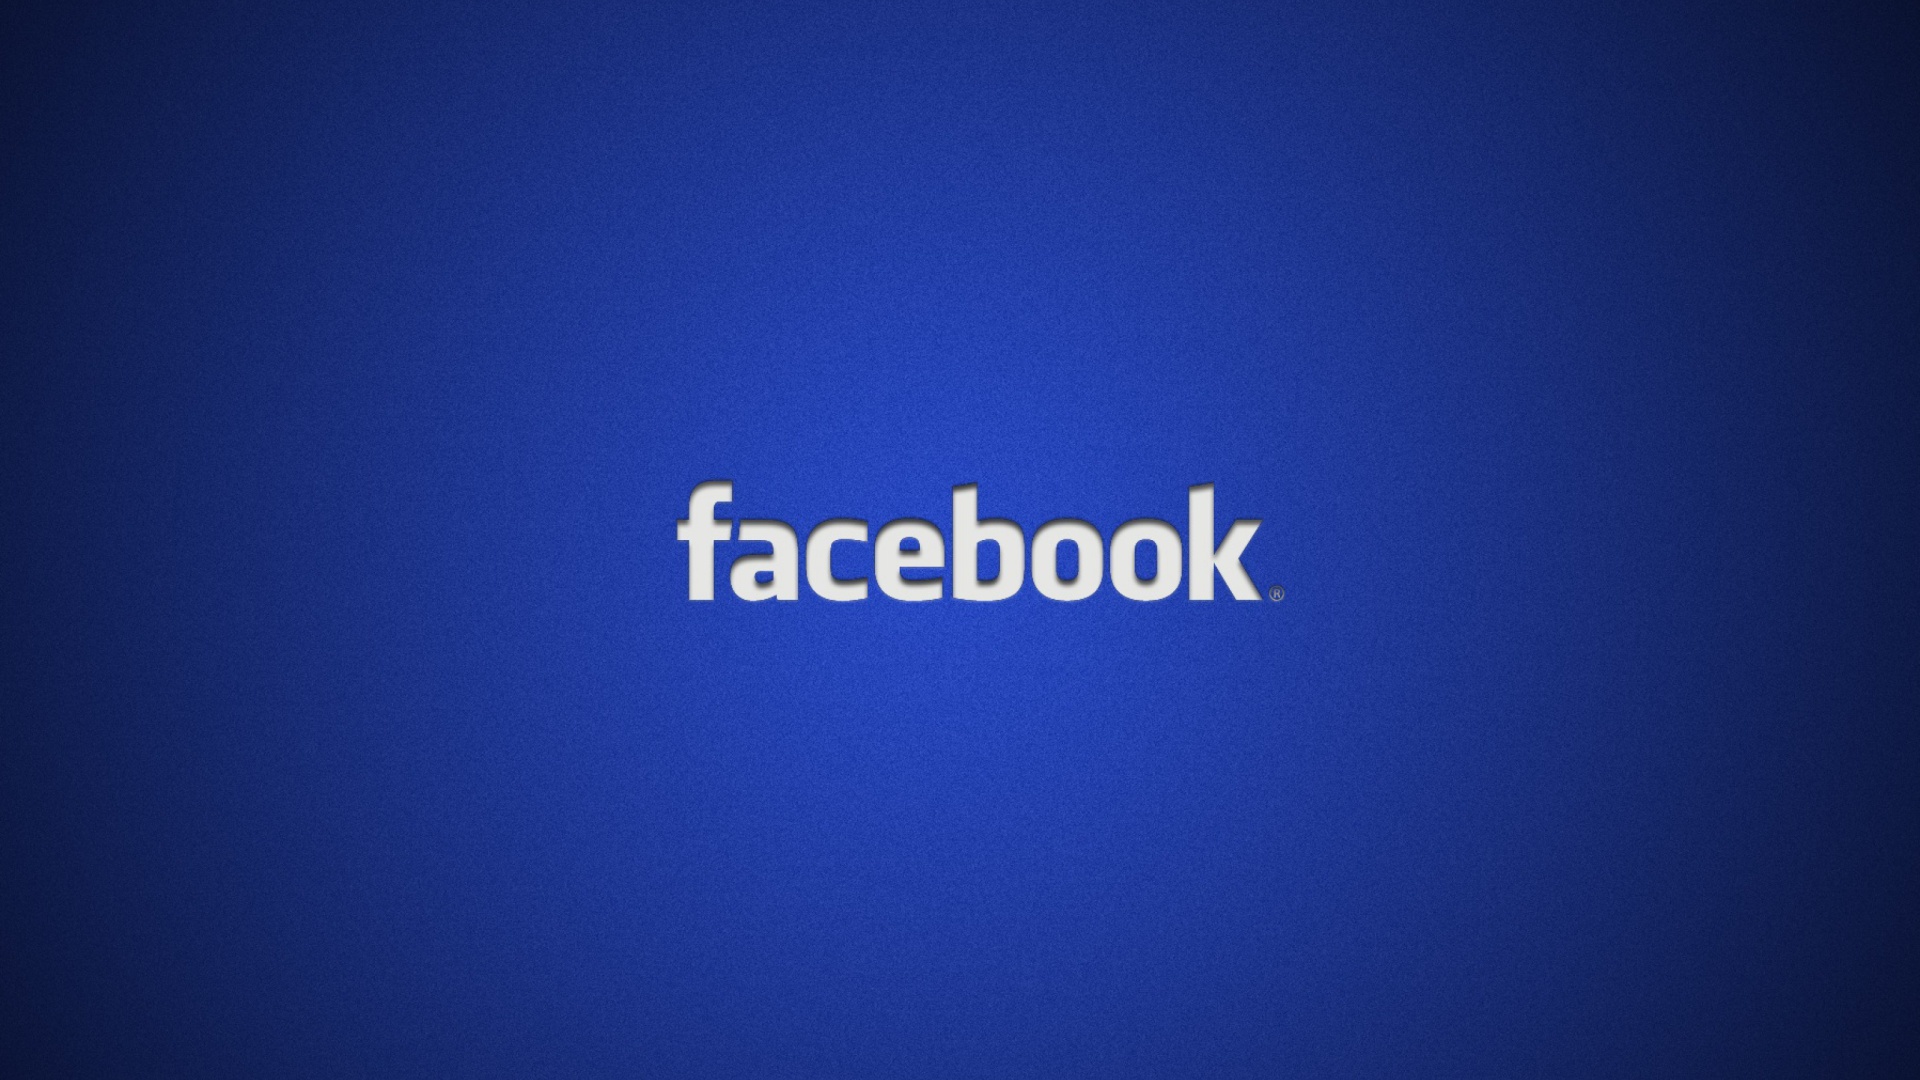 Facebook Logo wallpaper 1920x1080